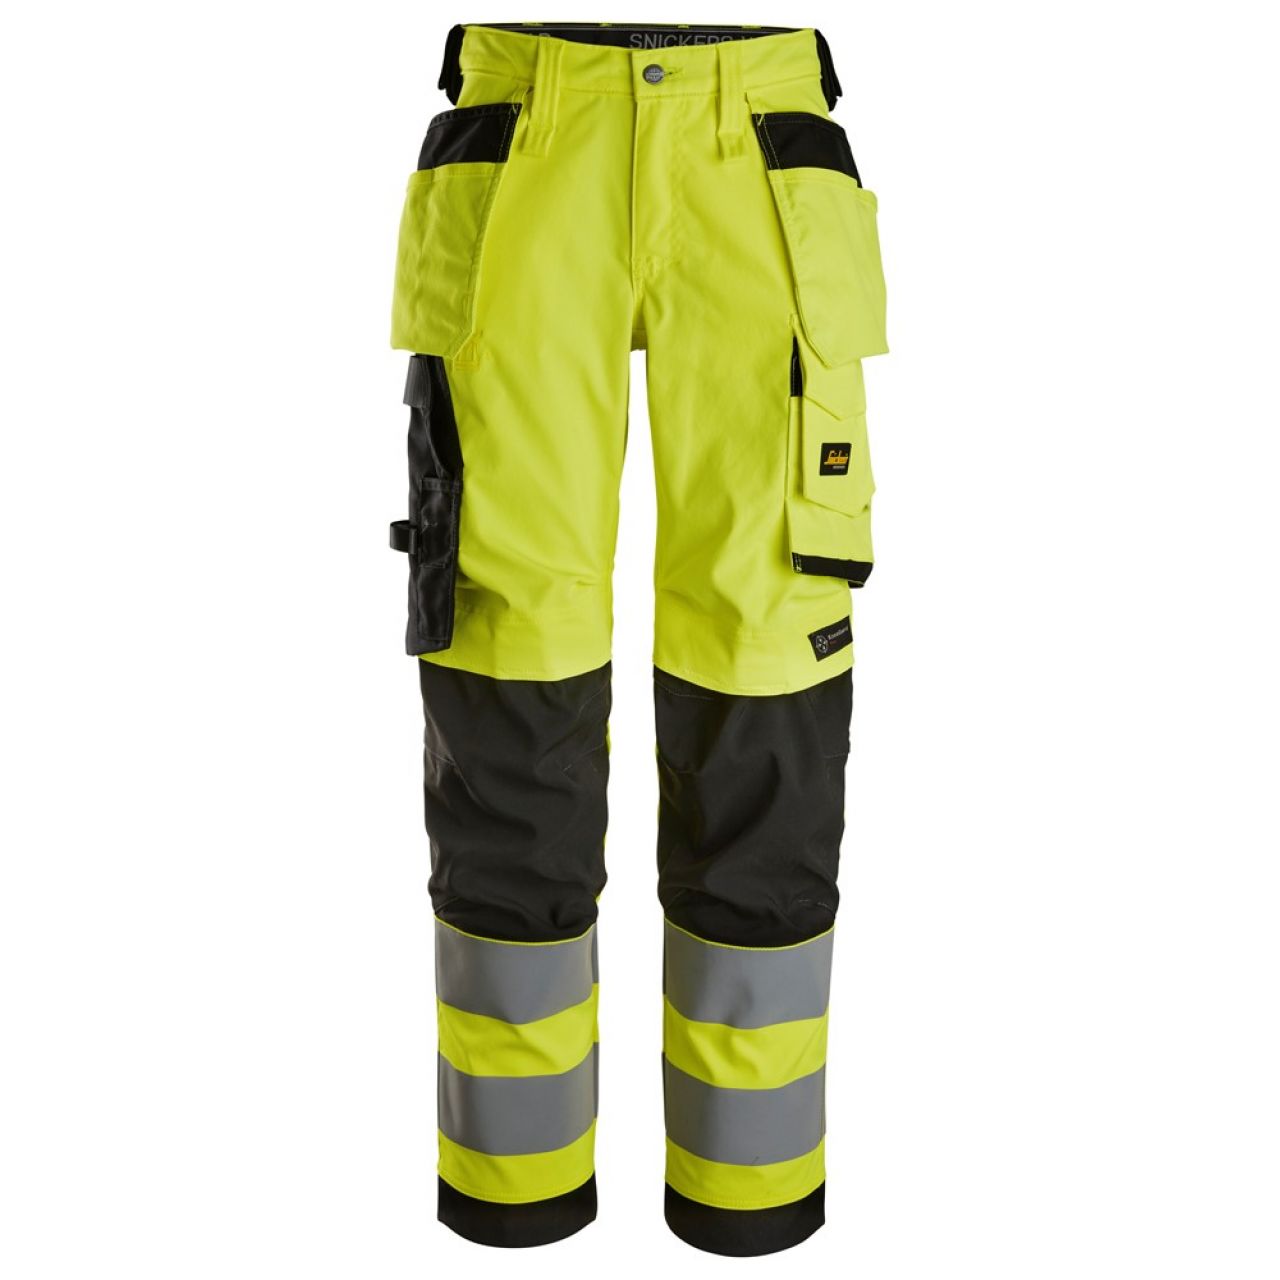 6743 Pantalones largos de trabajo elásticos de alta visibilidad clase 2 para mujer con bolsillos flotantes amarillo-negro talla 21